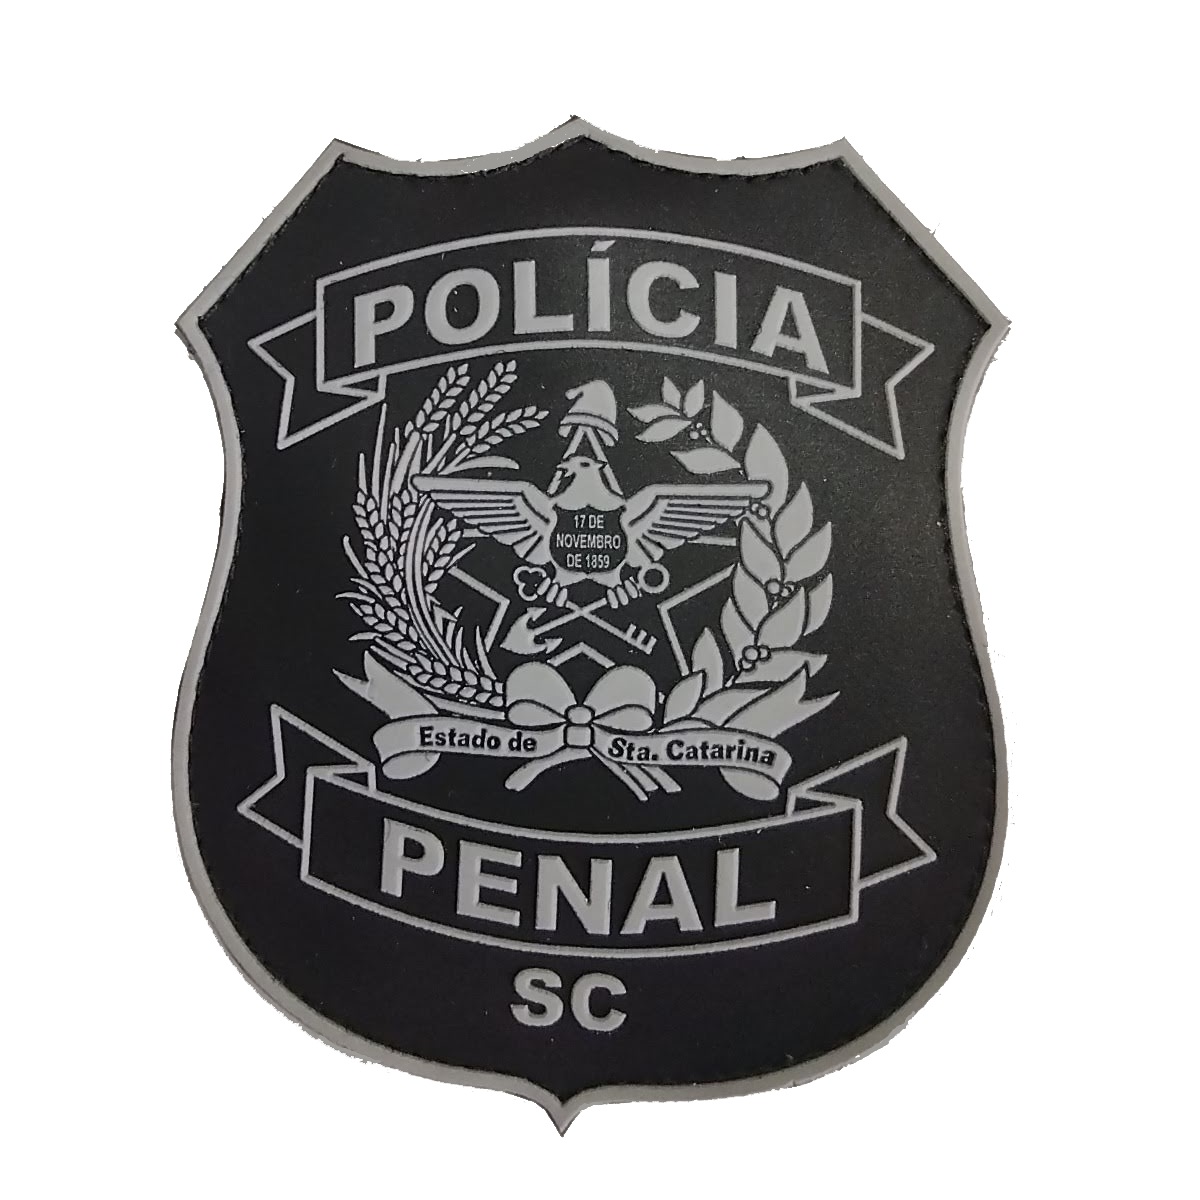 BRASÃO POLICIA PENAL SC EMBORRACHADO COM VELCRO